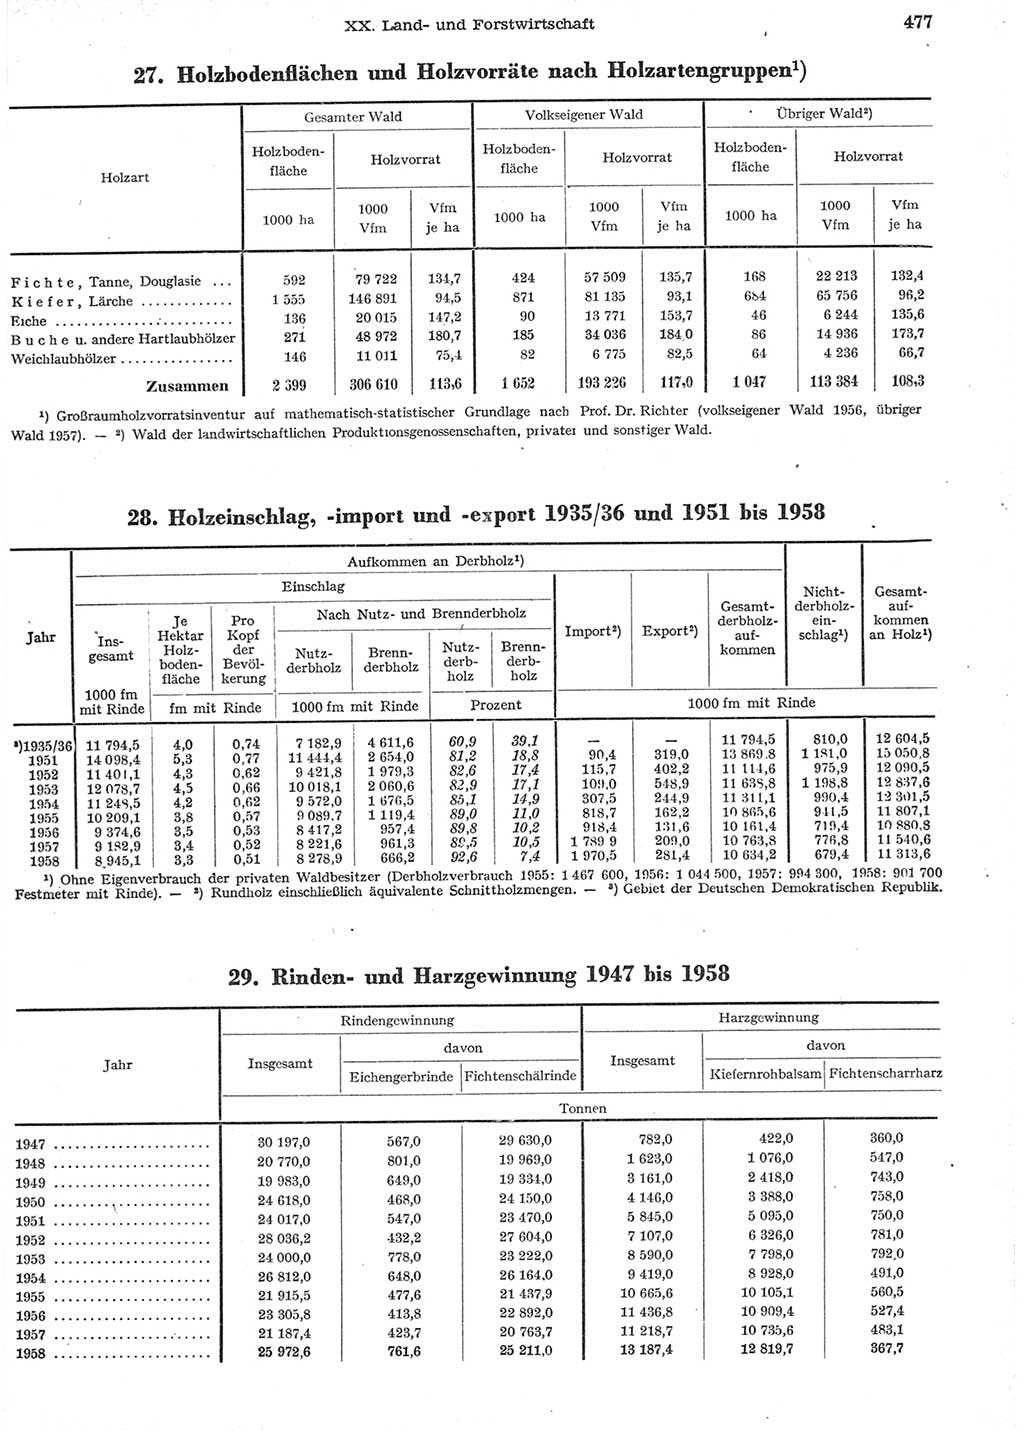 Statistisches Jahrbuch der Deutschen Demokratischen Republik (DDR) 1958, Seite 477 (Stat. Jb. DDR 1958, S. 477)